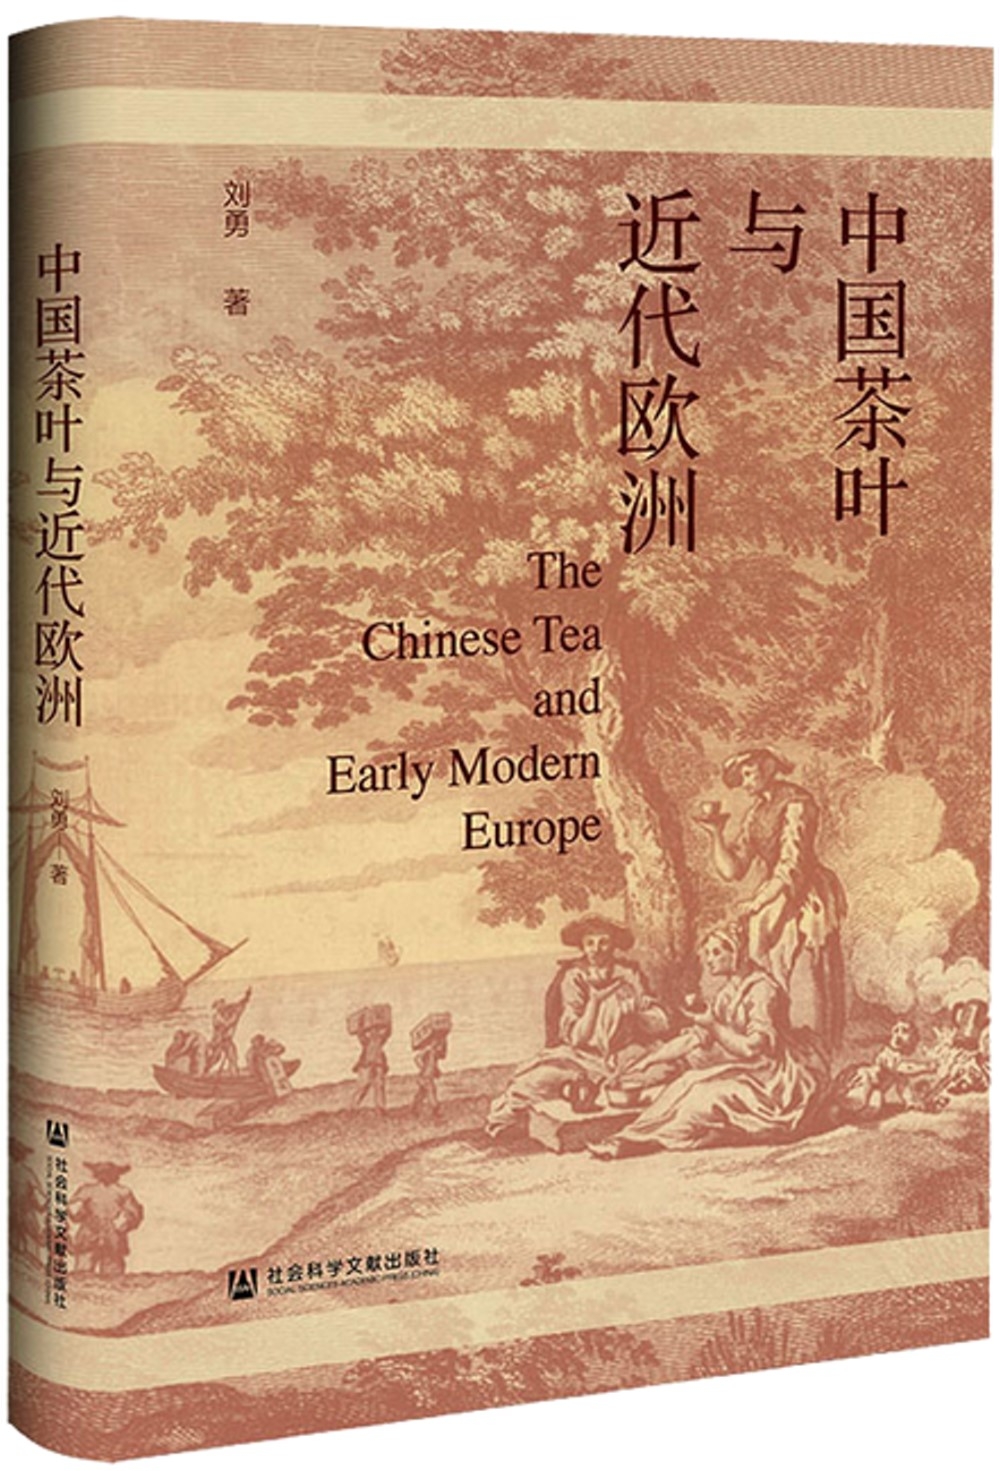 中國茶葉與近代歐洲